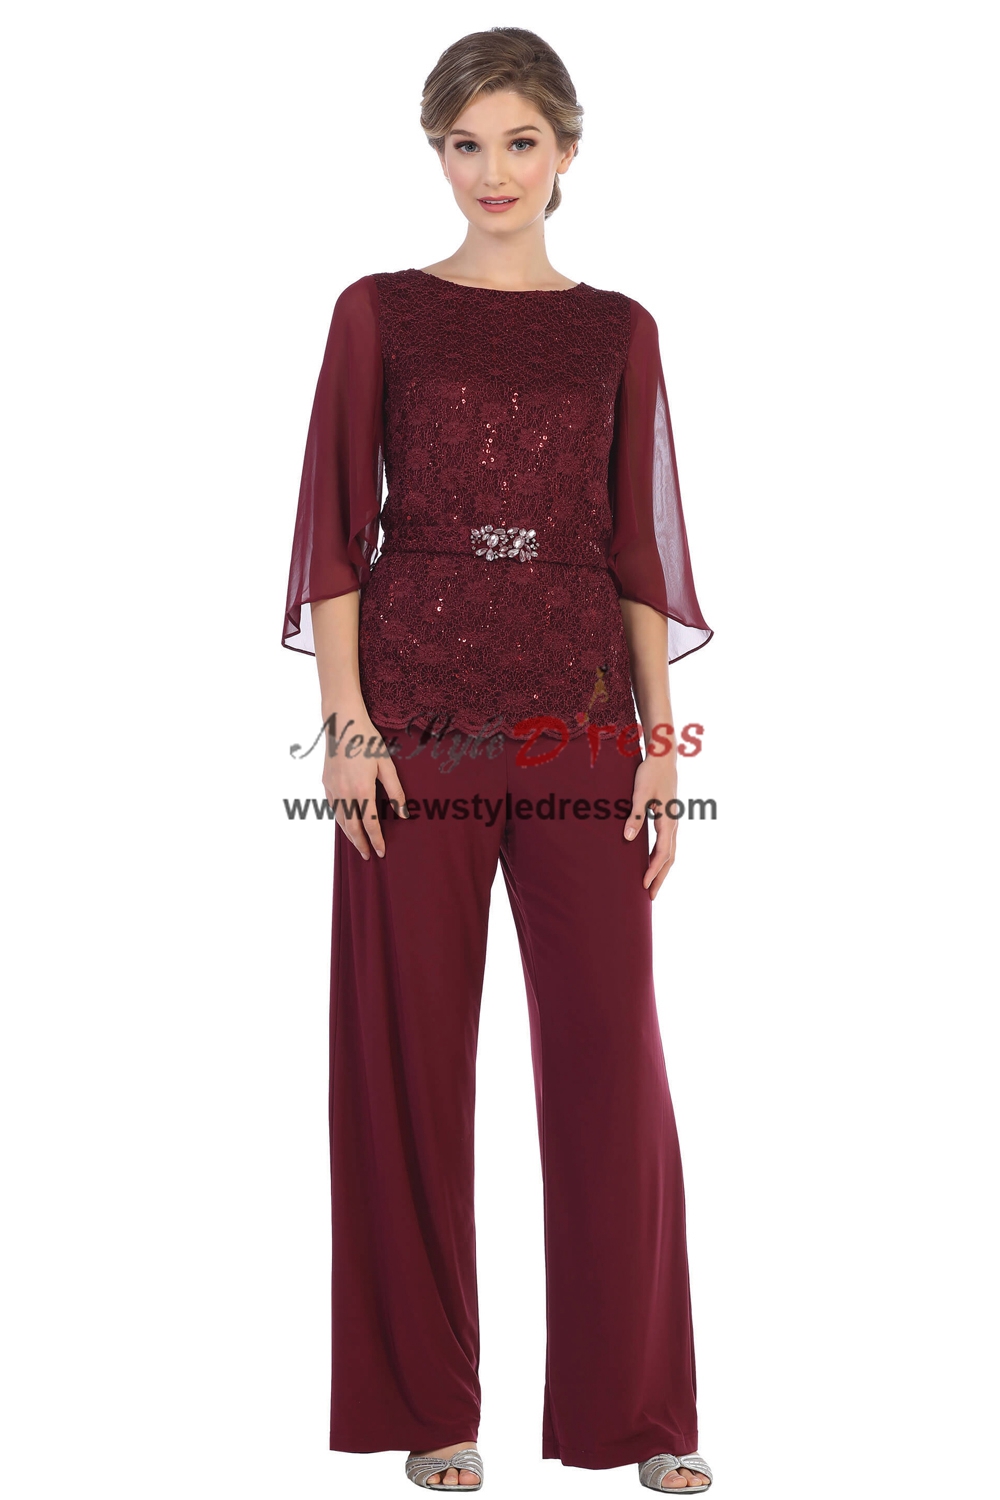 2PC Modern Burgundy Lace Women's Pants suits,Wedding Guest Pant Suits ...